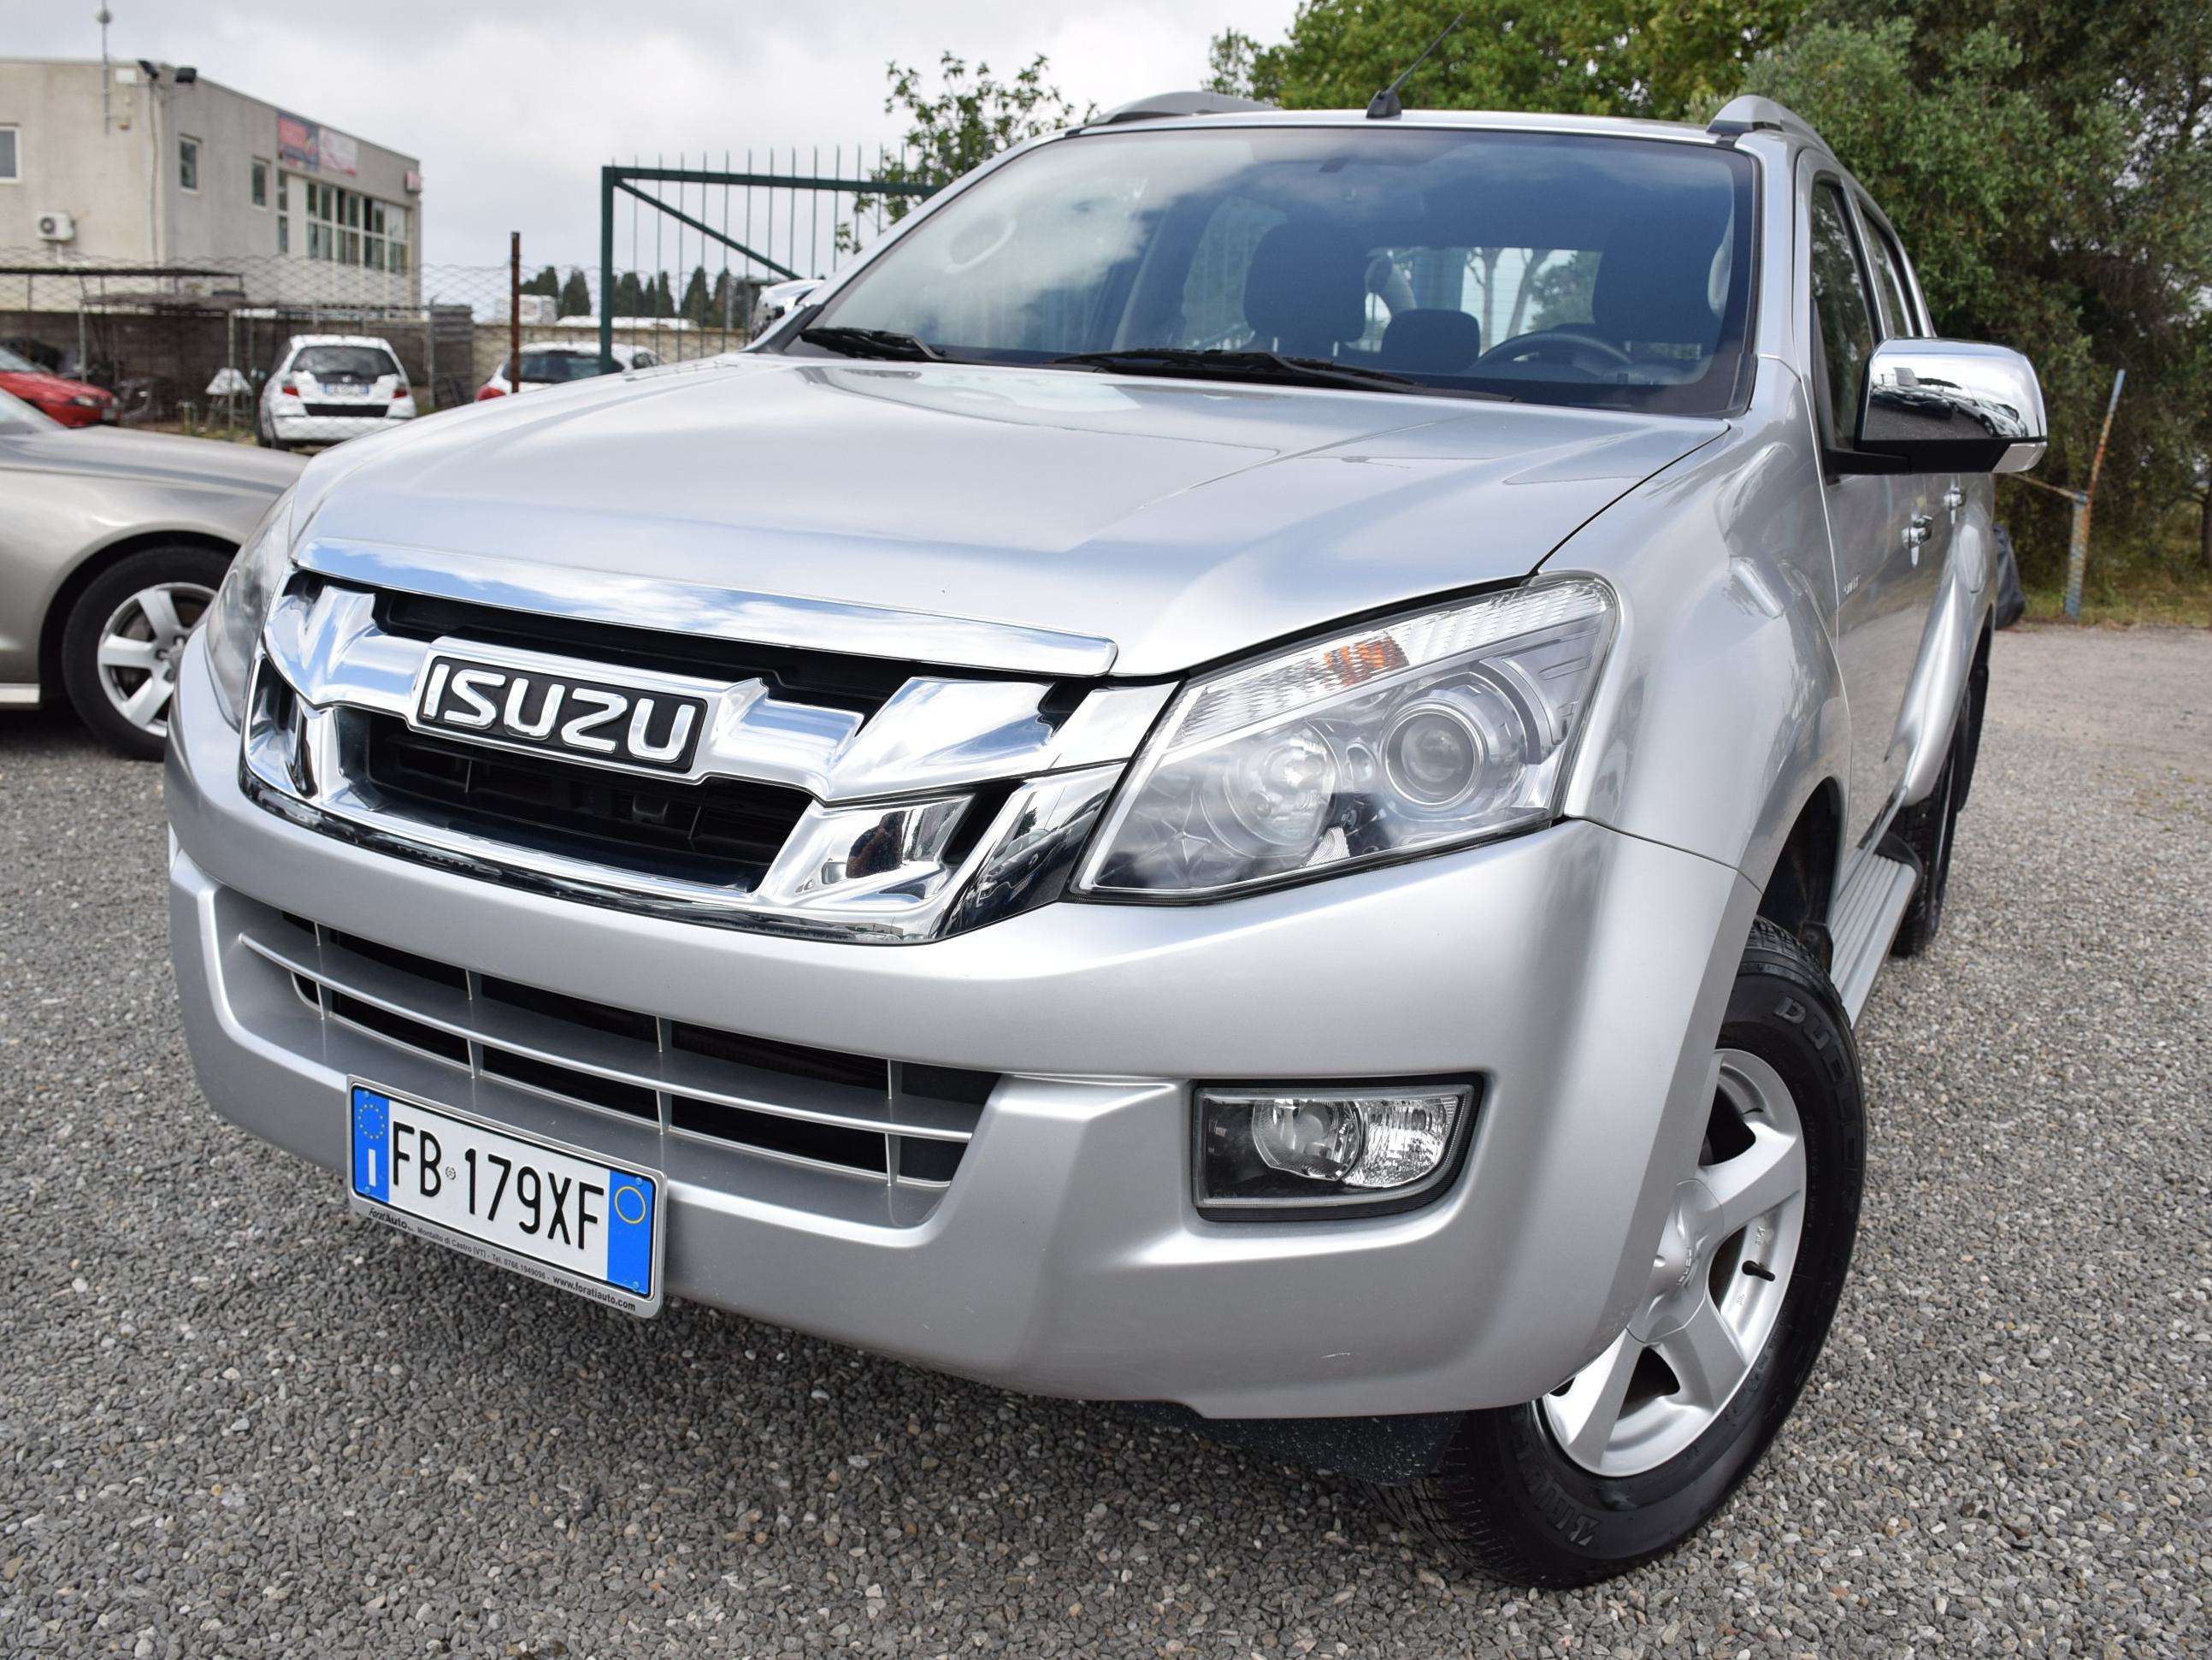 Isuzu D-Max Off-Road/Pick-up in Silver used in Montalto di Castro - Viterbo - Vt for € 30,900.-